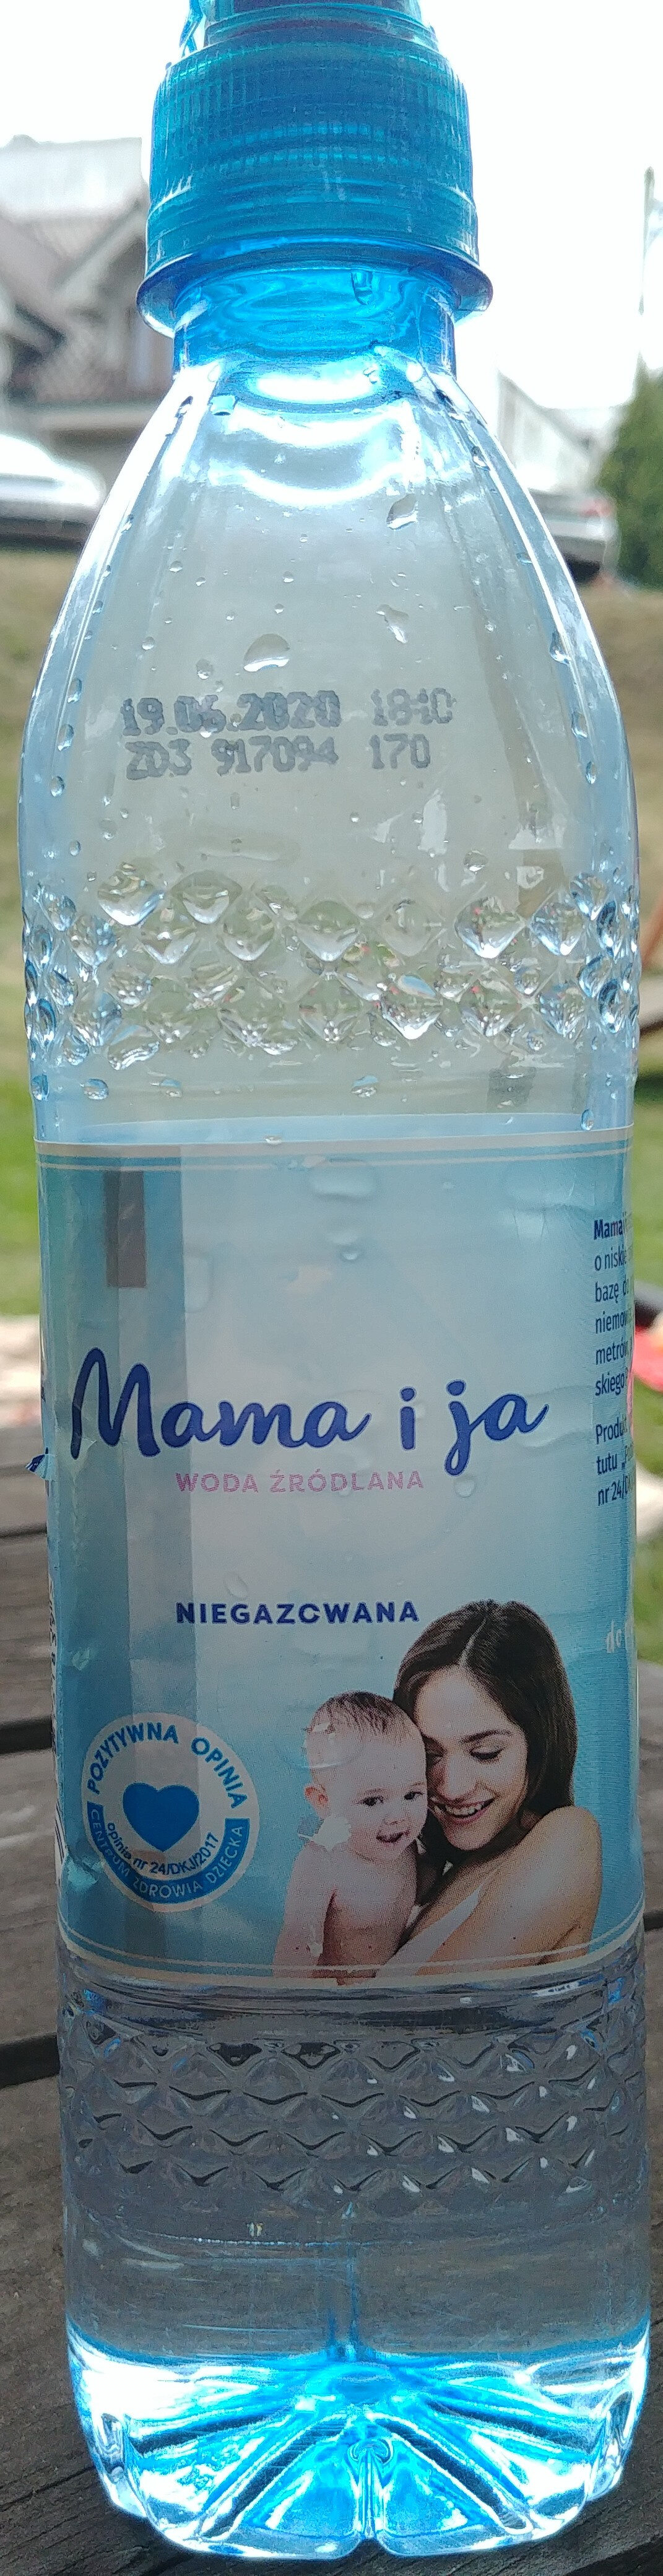 Woda źródlana - Produkt